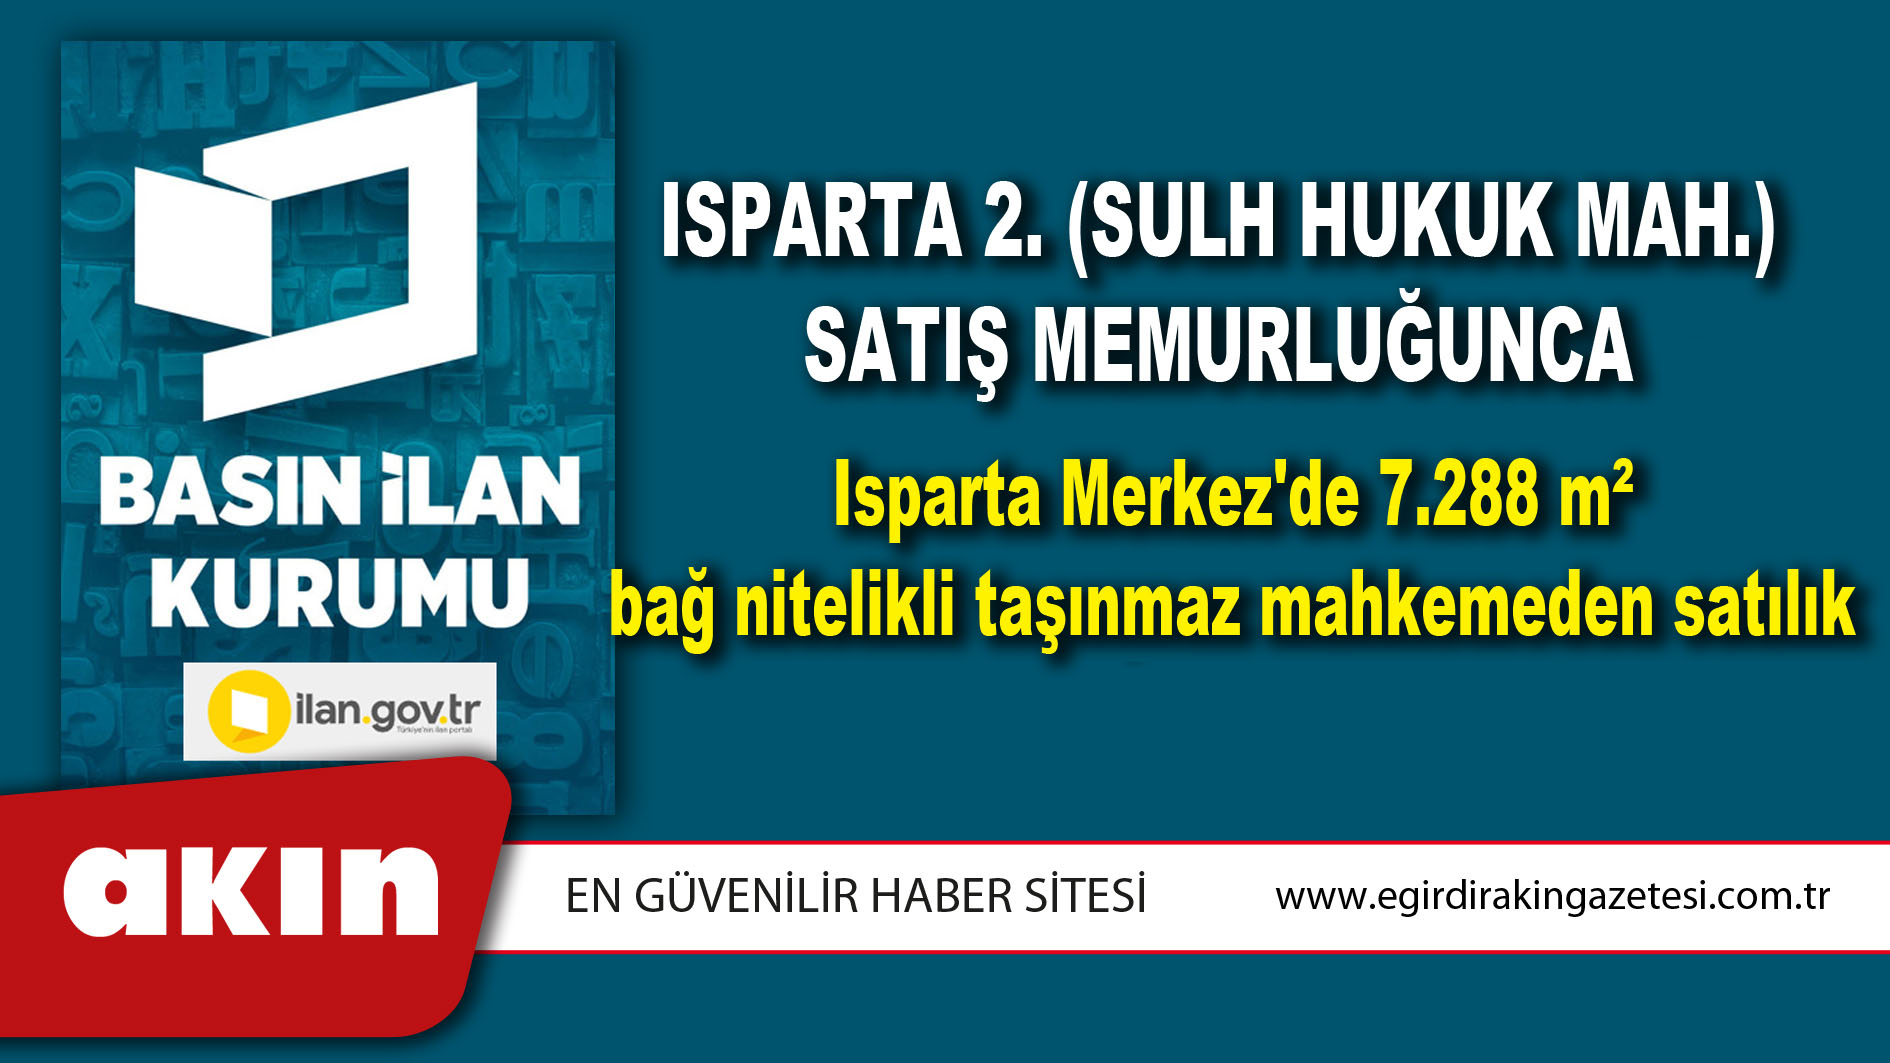 Isparta 2. (Sulh Hukuk Mah.) Satış Memurluğunca Isparta Merkez'de 7.288 m² bağ nitelikli taşınmaz mahkemeden satılık